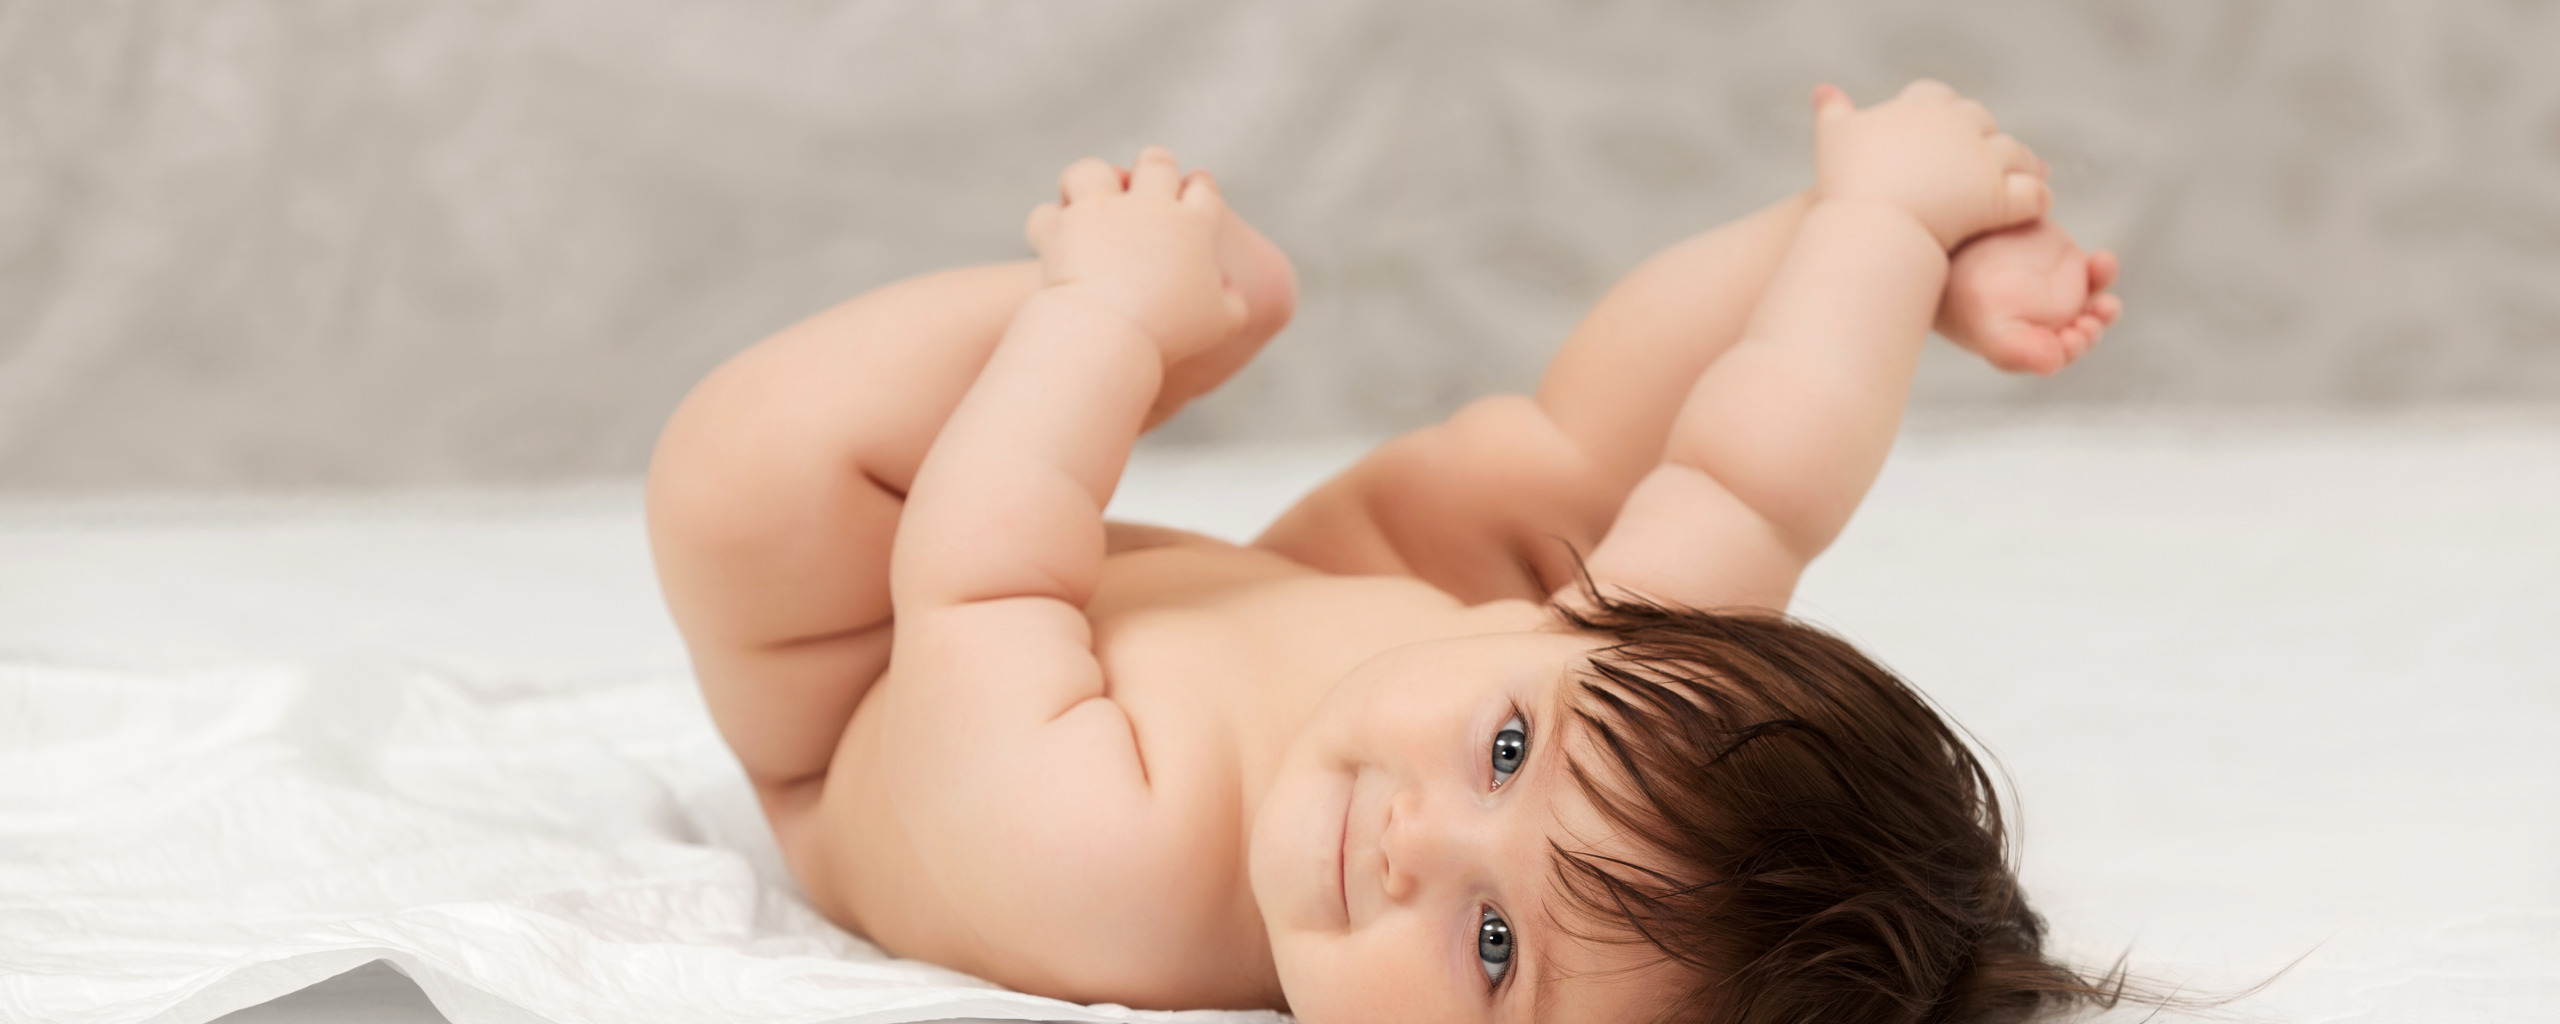 Тела новорожденных в новой москве. Новорожденный ребенок голенький. Маленькие попочки младенцев. Новорожденный ребенок с длинными волосами.